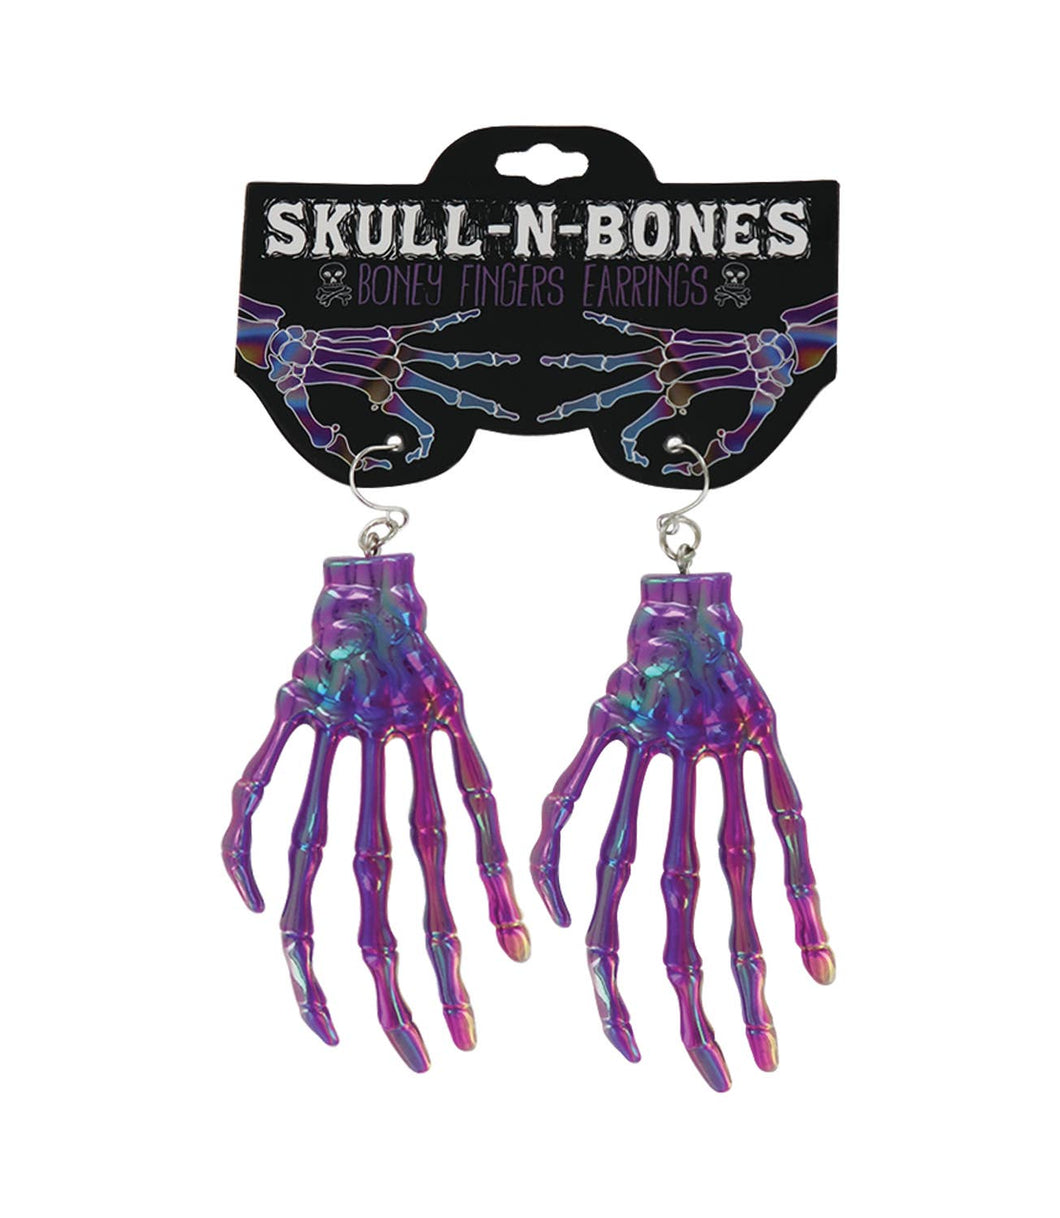 Skull-N-Bones Earrings